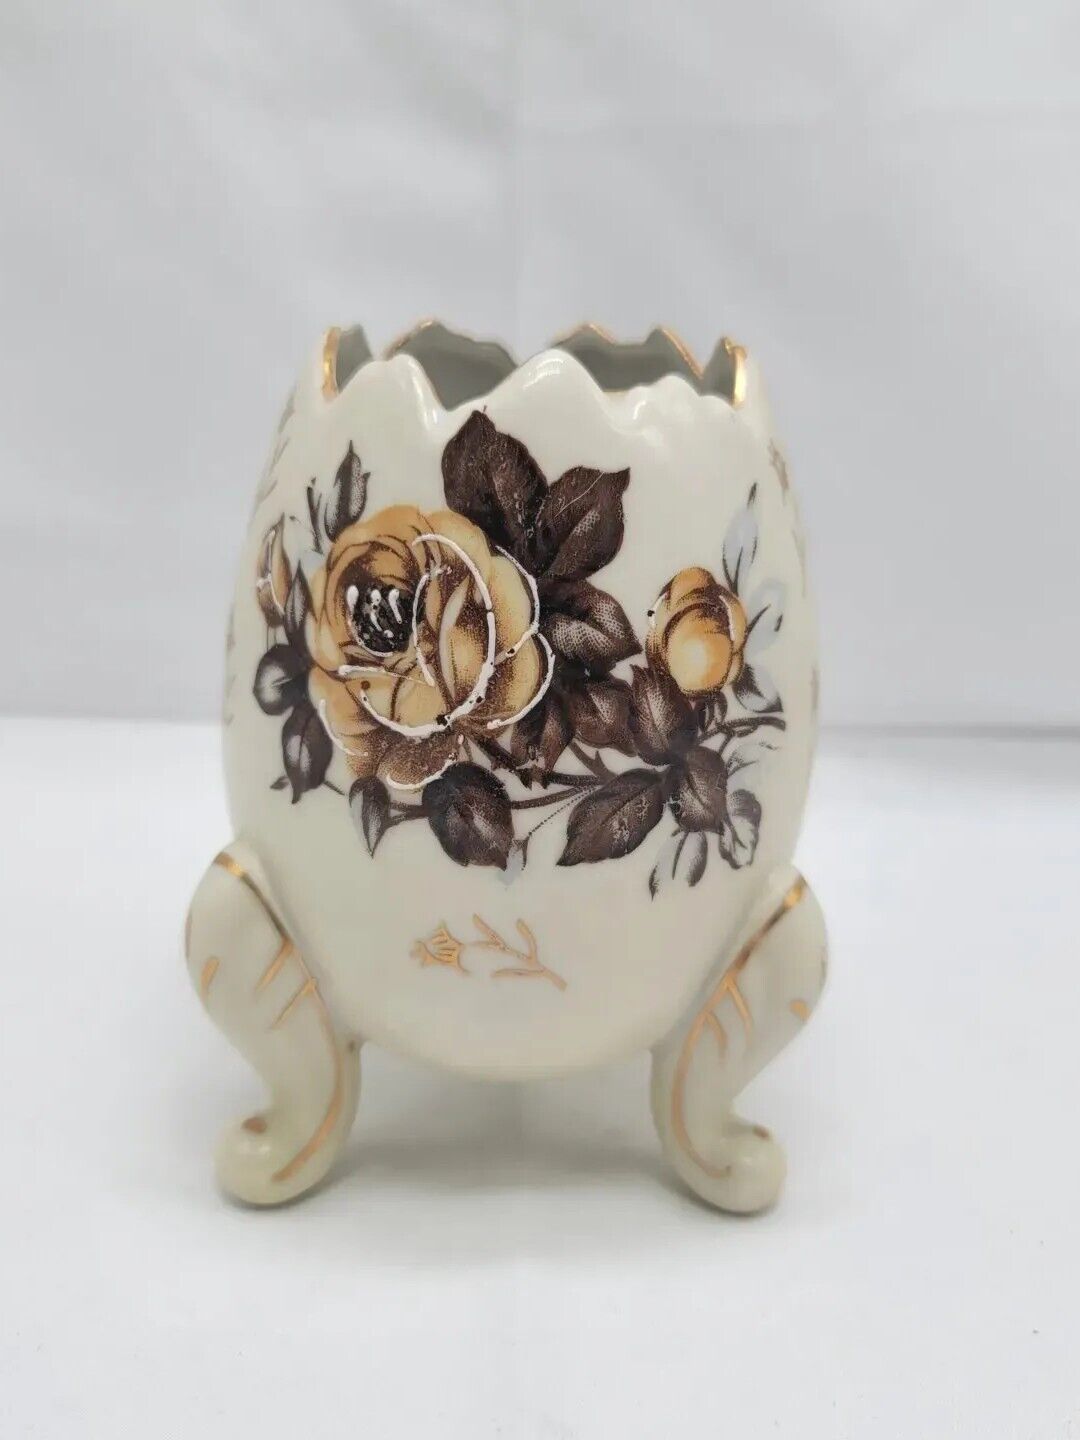 Napcoware Porcelain Cracked Egg Cup Vase 3-Footed Vintage Gold Brown Flowers